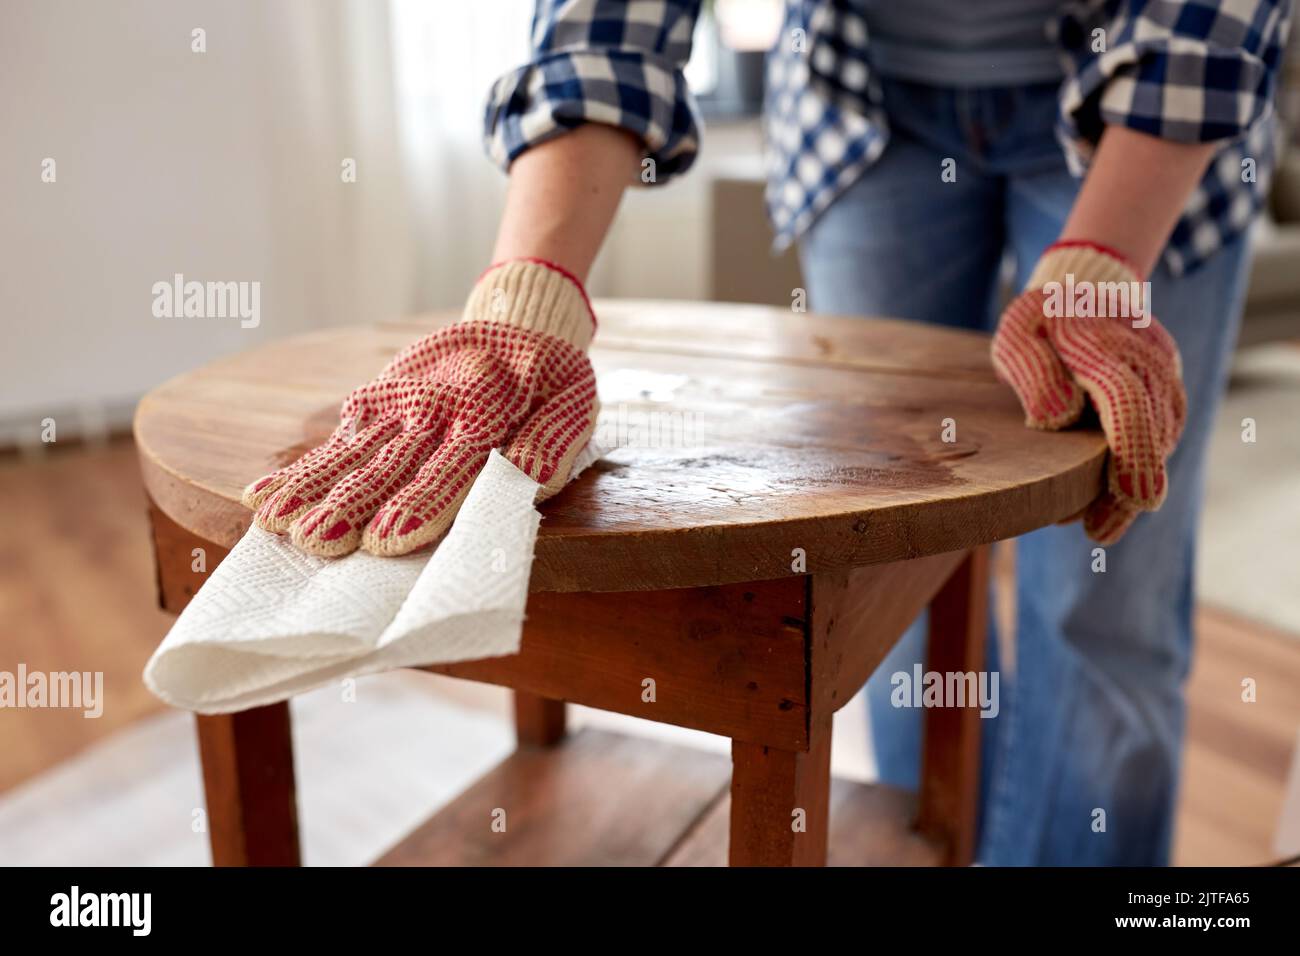 femme nettoyant la surface de la table ancienne avec du papier absorbant Banque D'Images